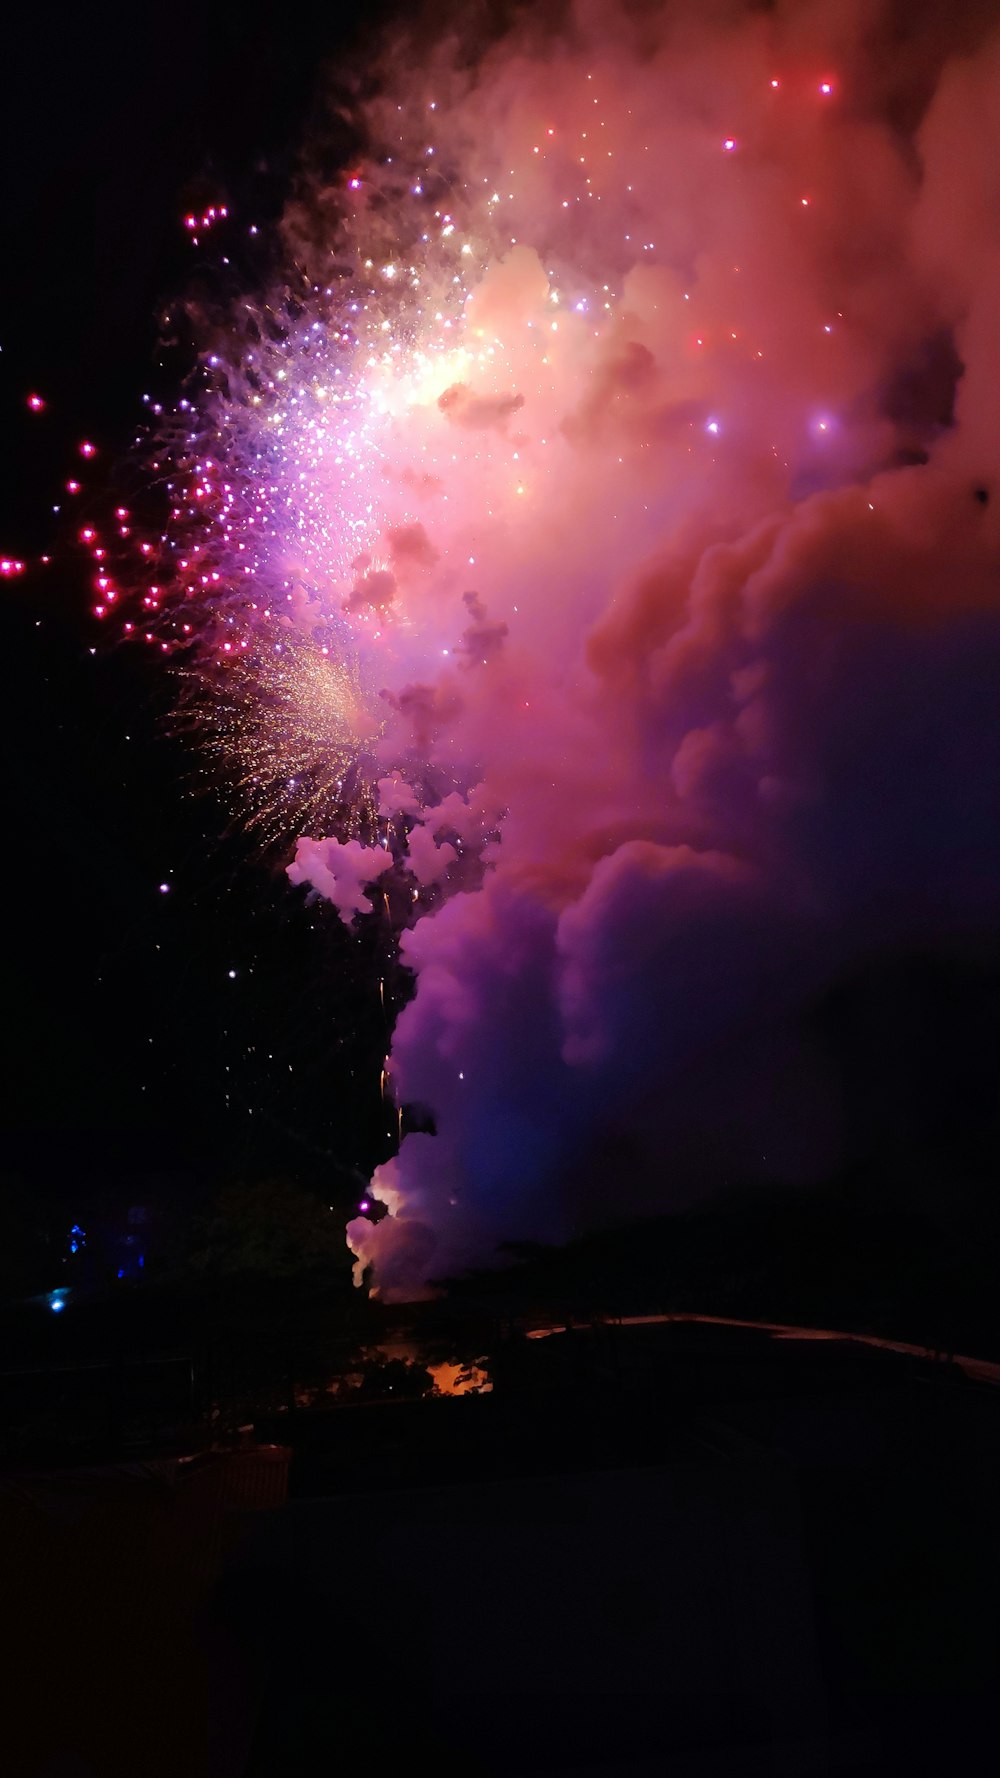 Ein buntes Feuerwerk wird am Nachthimmel entzündet